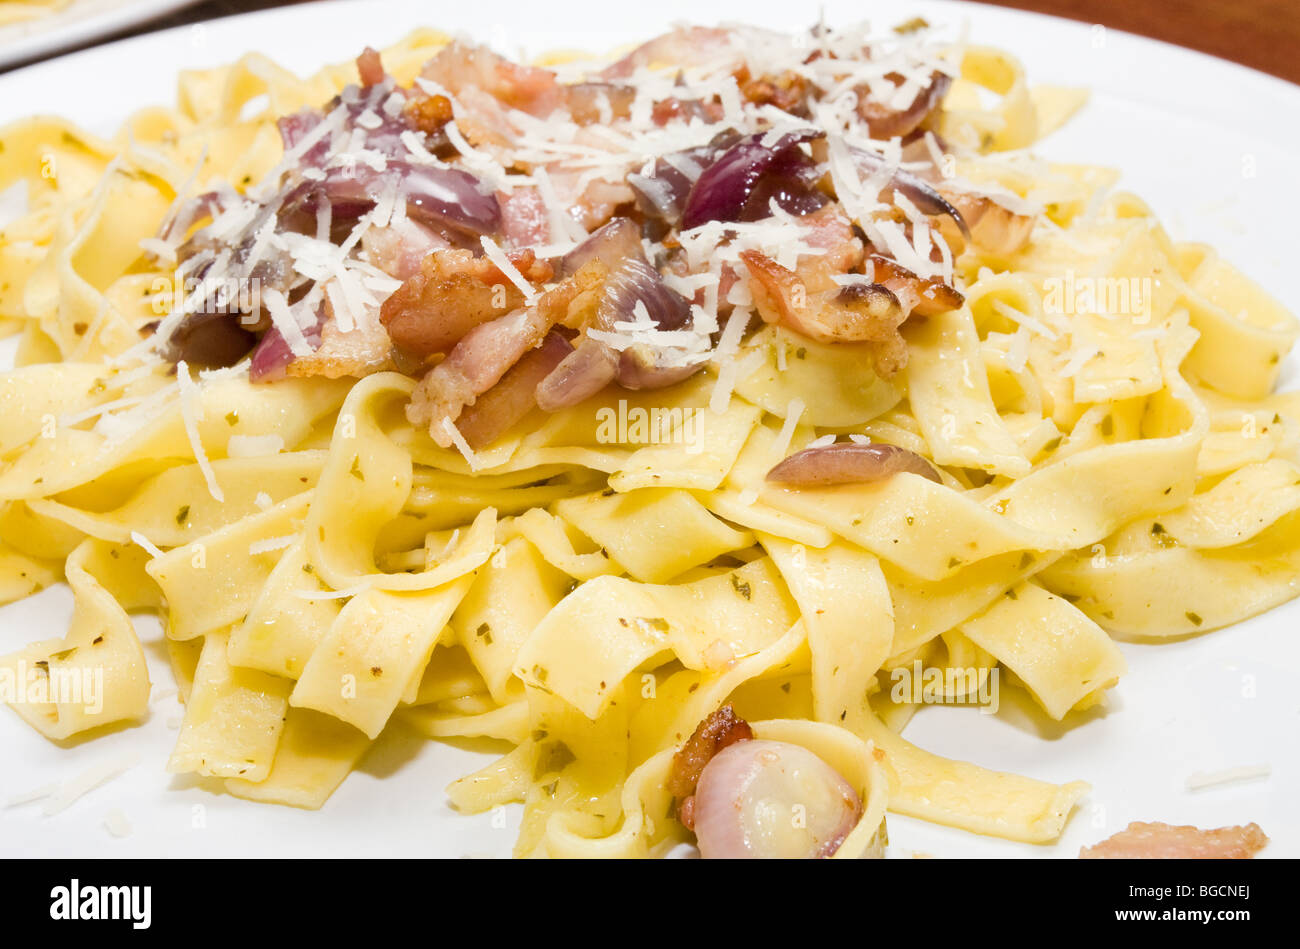 Assiette de tagliatelles sautées dans l'huile d'olive et au pesto avec lard grillé et oignon rouge. Garni de fromage parmesan râpé. Banque D'Images